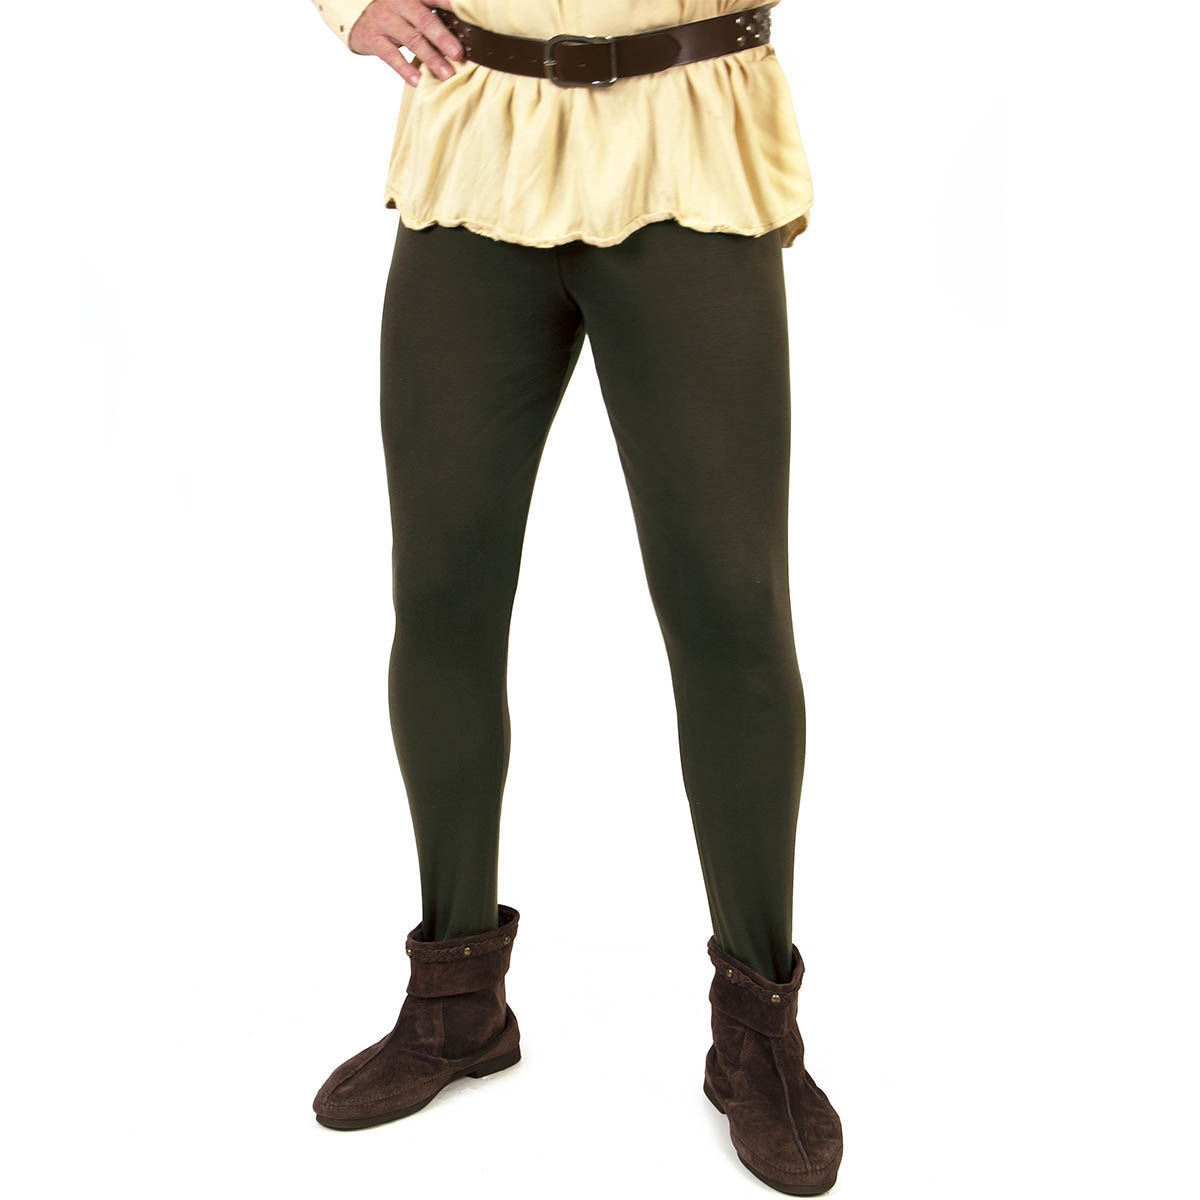 Mittelalterliche Pantalons, Farbe Grün, Größe S